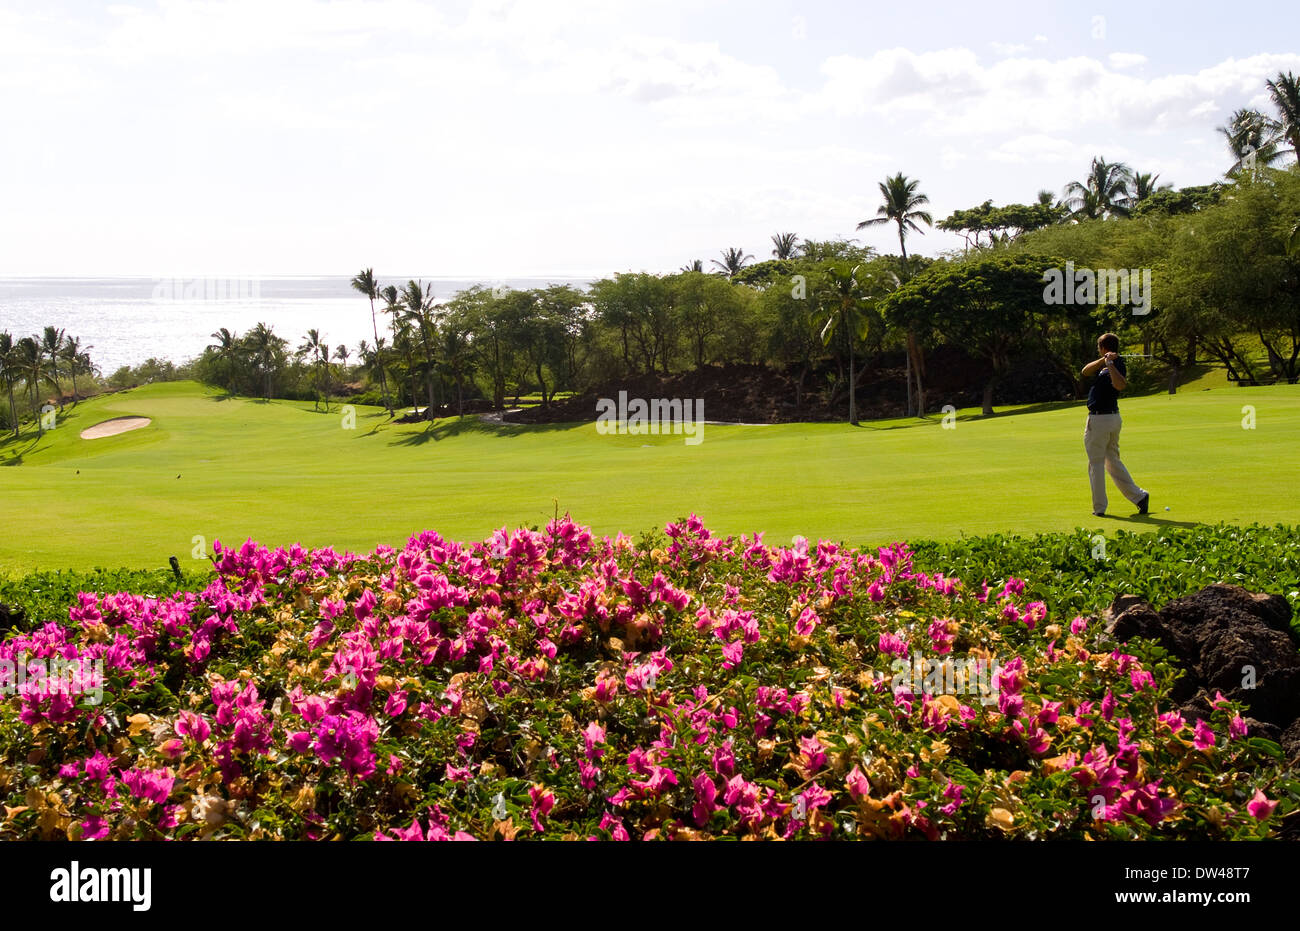 Golfista en exclusiva el Wailea hermosa esmeralda agujero curso #1 con palmeras, flores belleza en Maui Hawaii Foto de stock